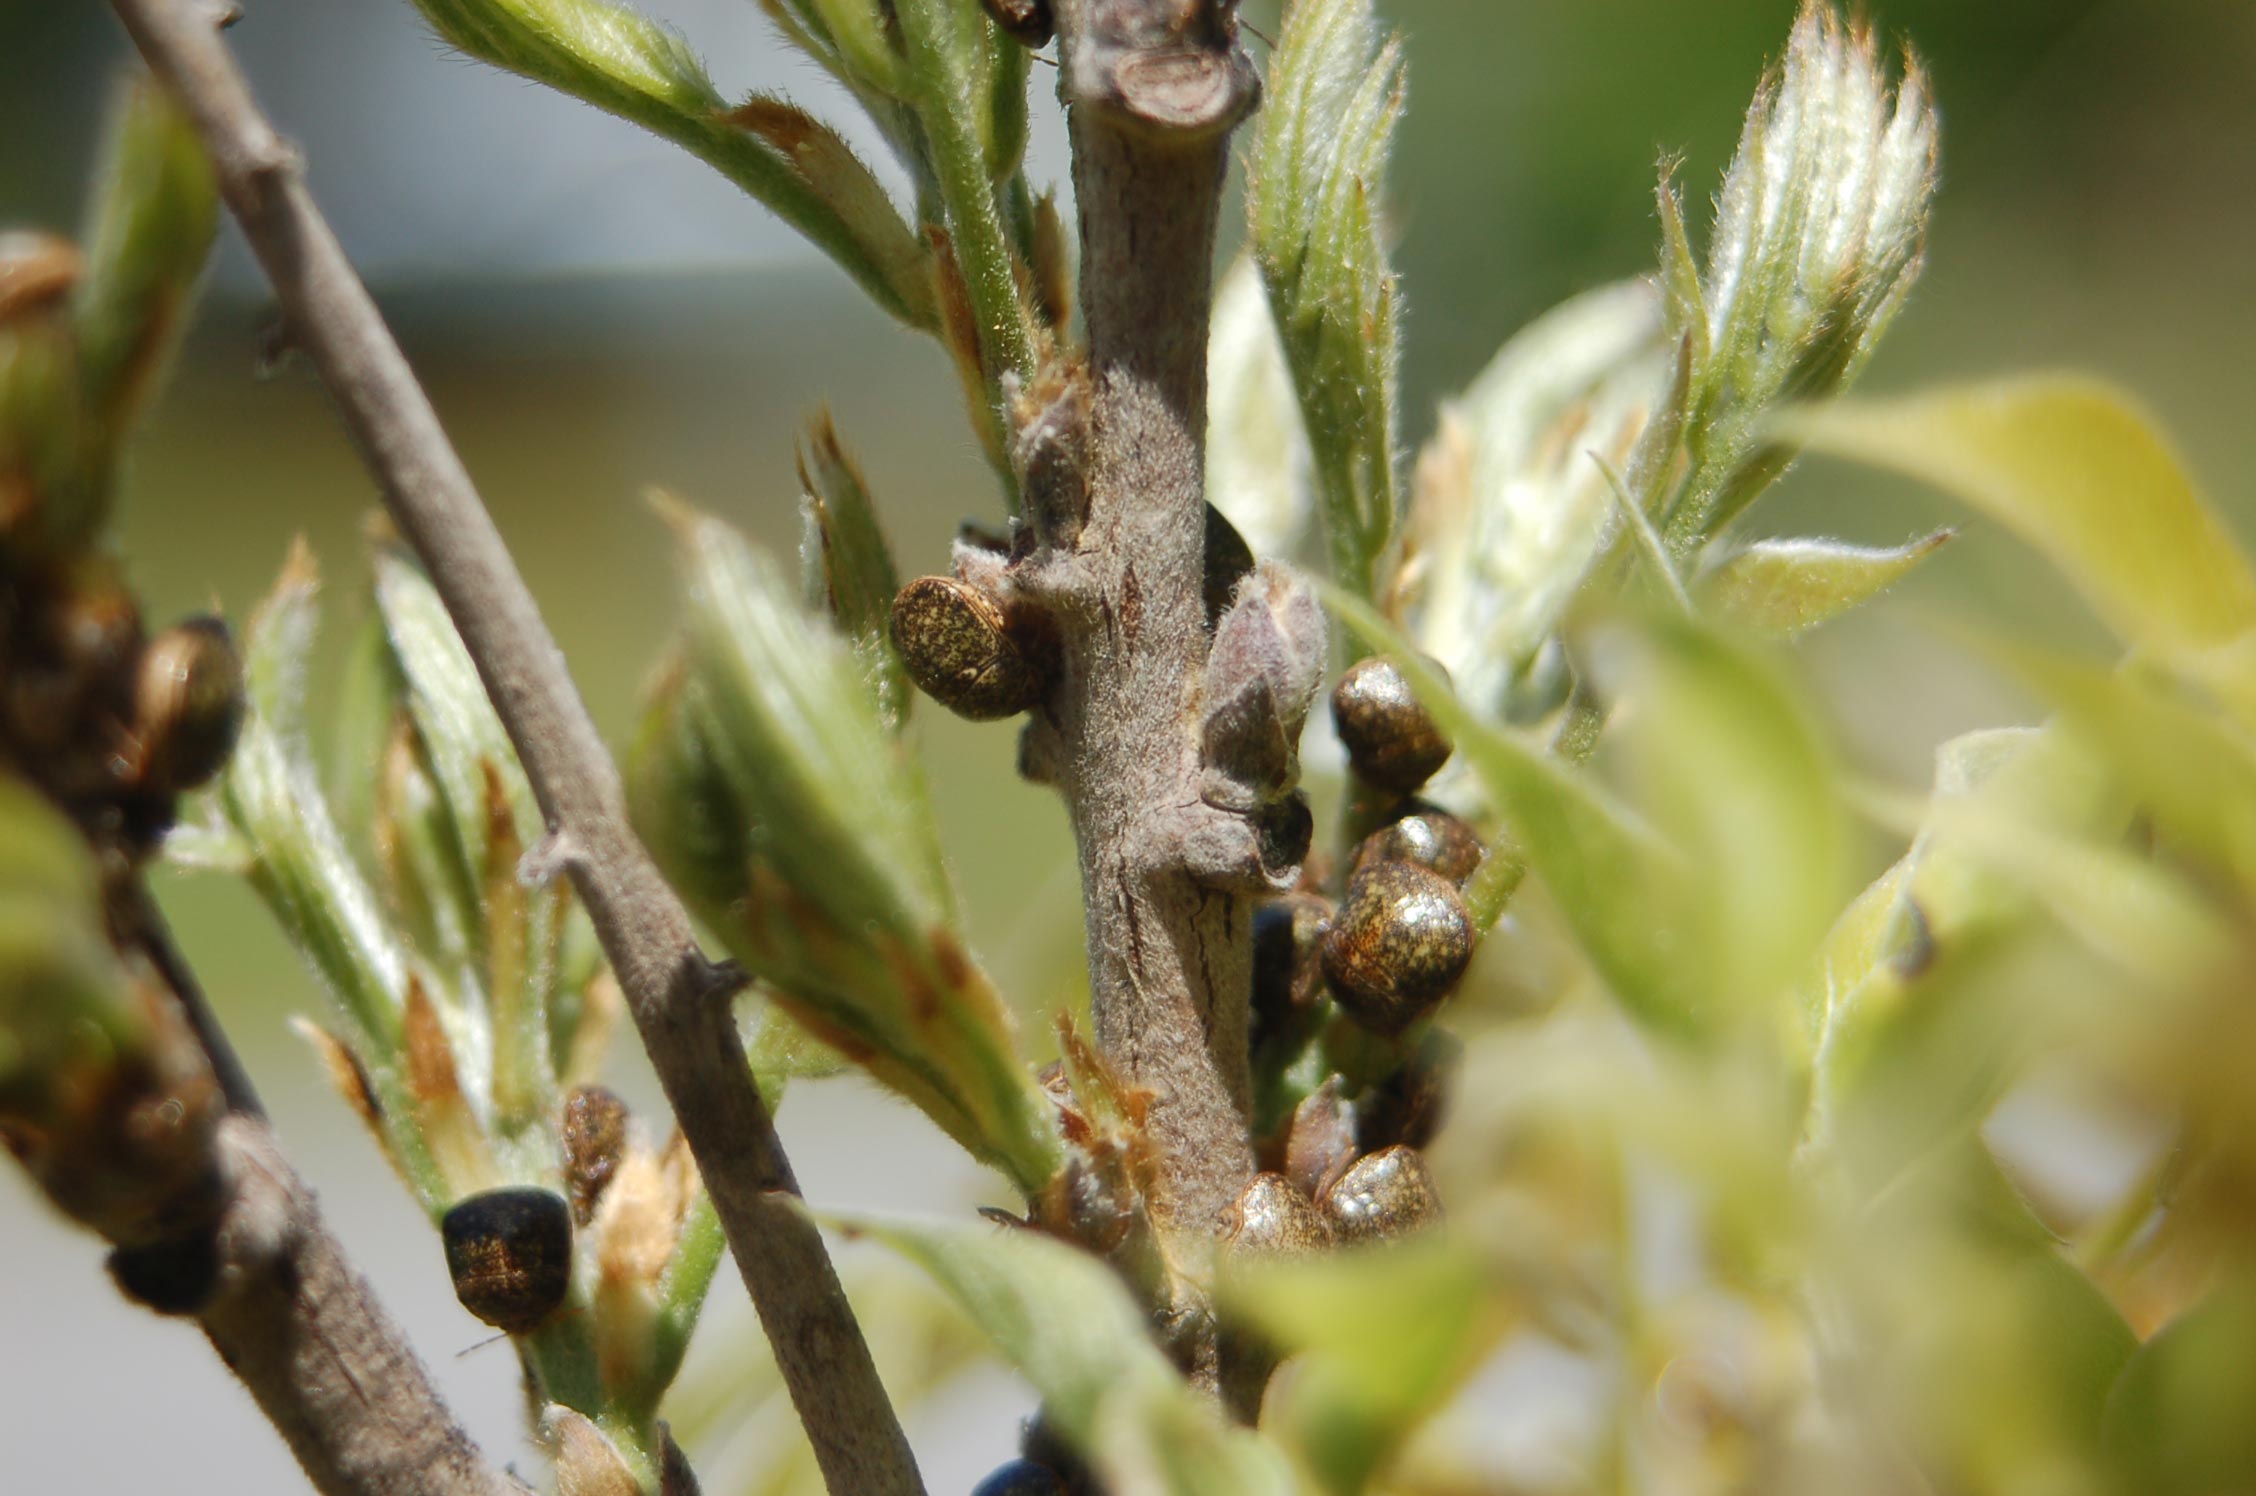 kudzu bug on wisteria